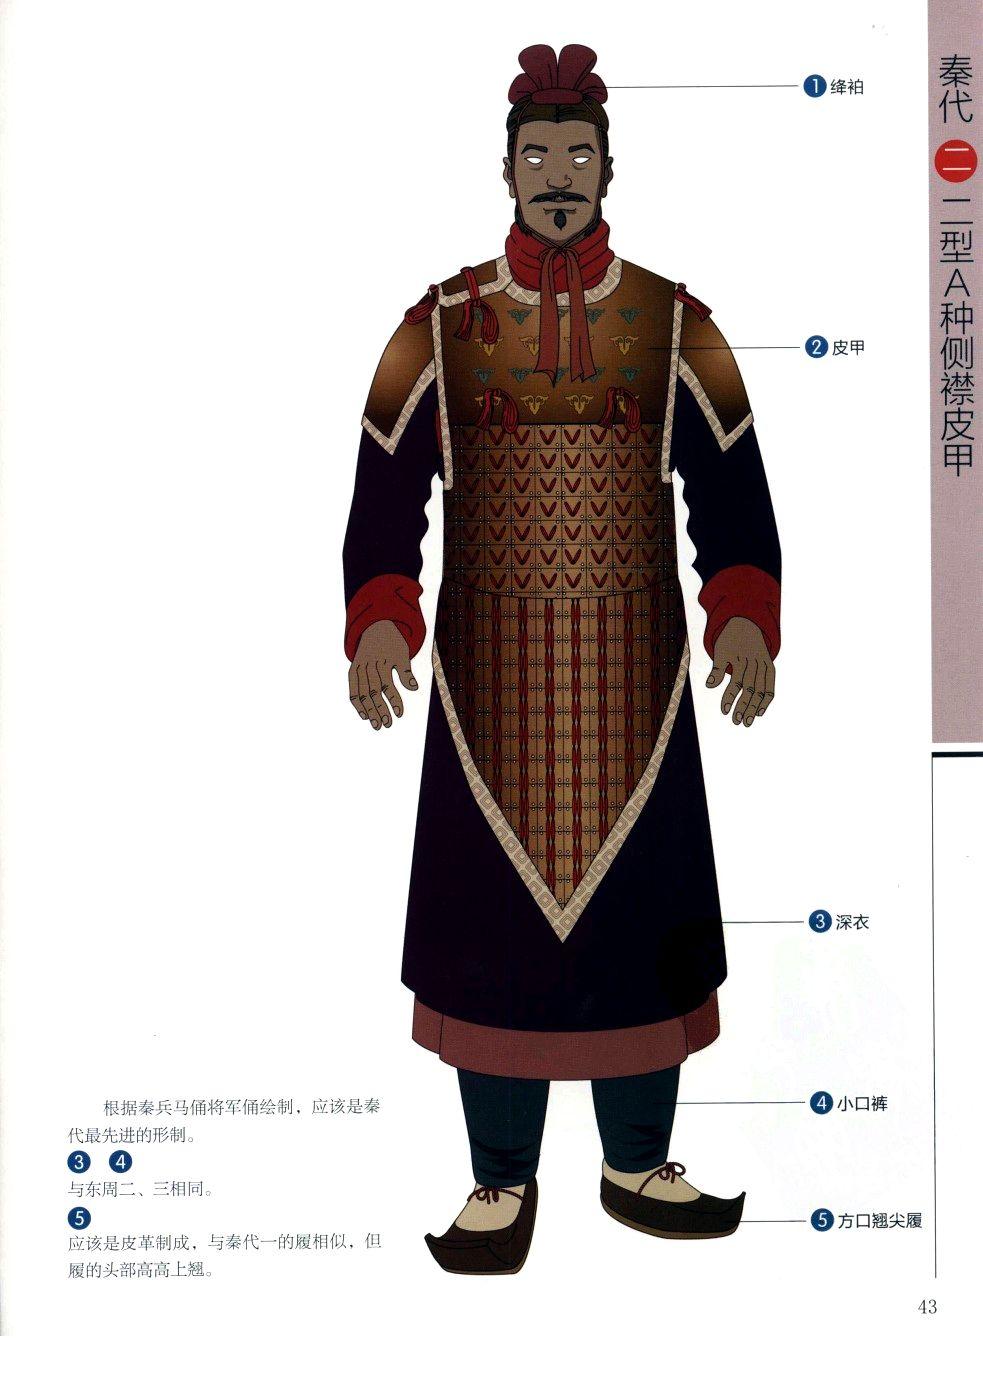 中国古代武将铠甲有那几个款式电视剧里看的好想打起来不方便